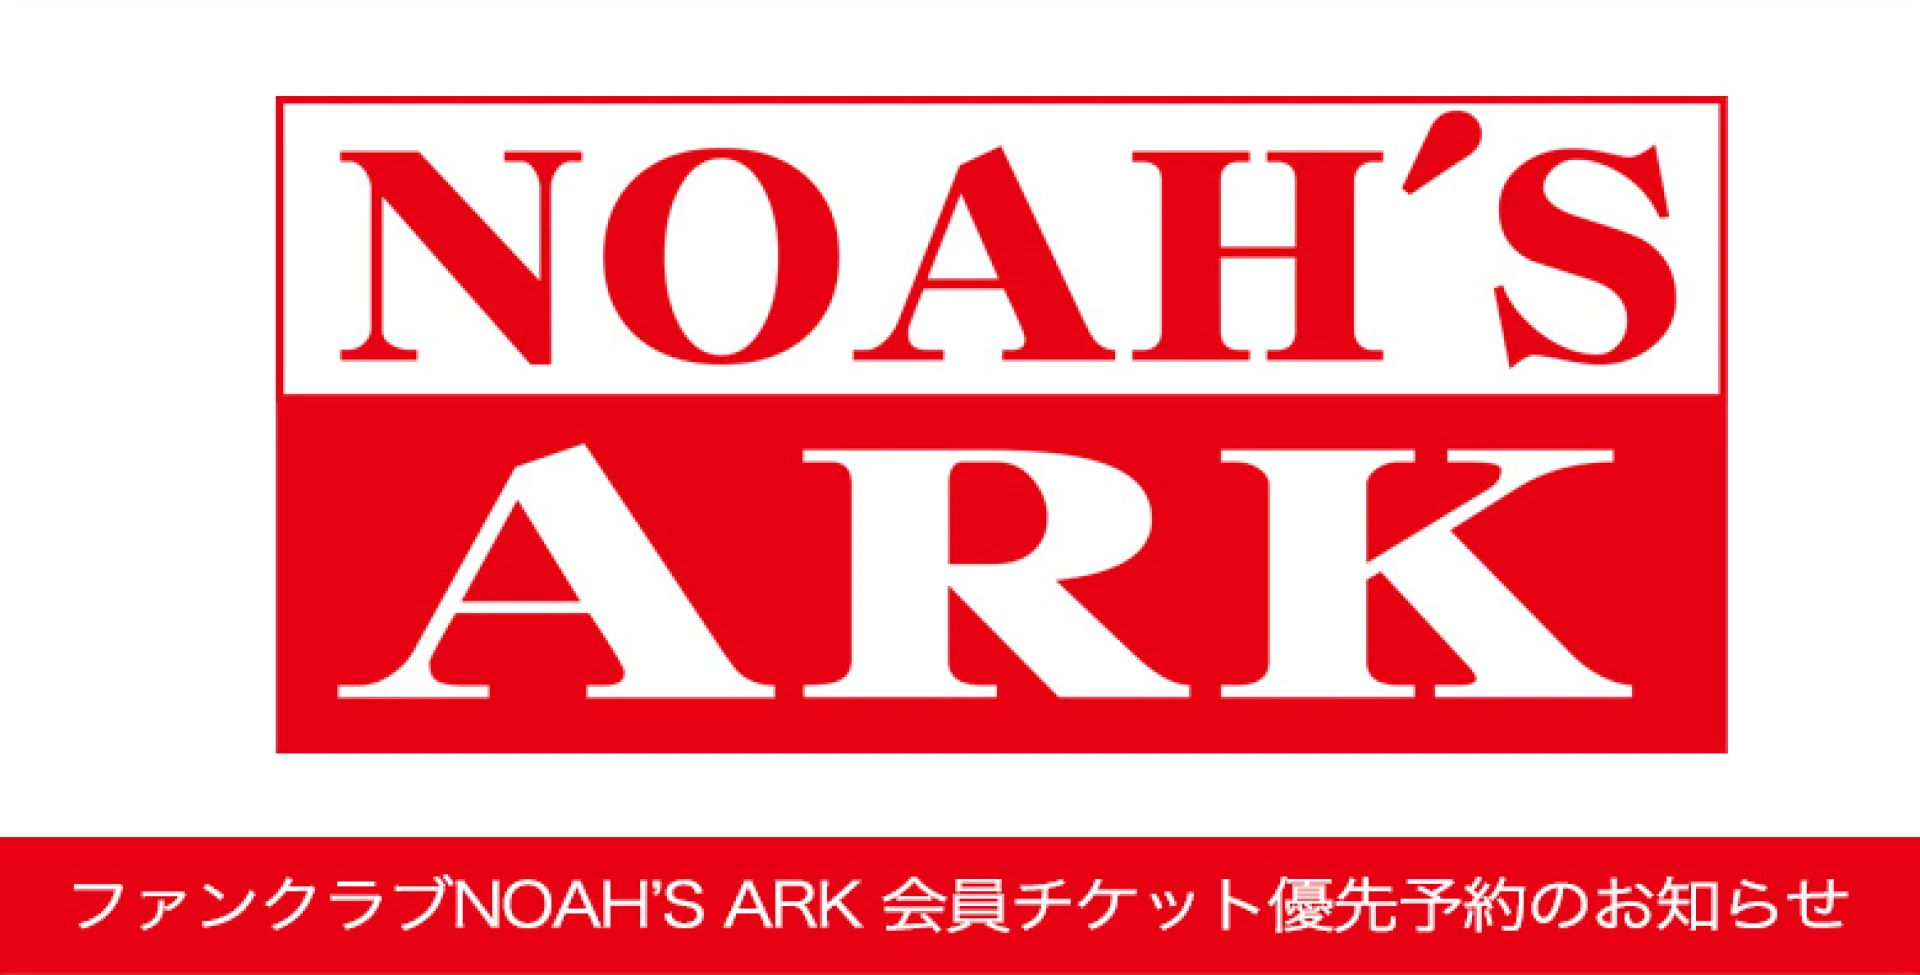 ファンクラブNOAH'S ARK チケット優先予約受付のお知らせ